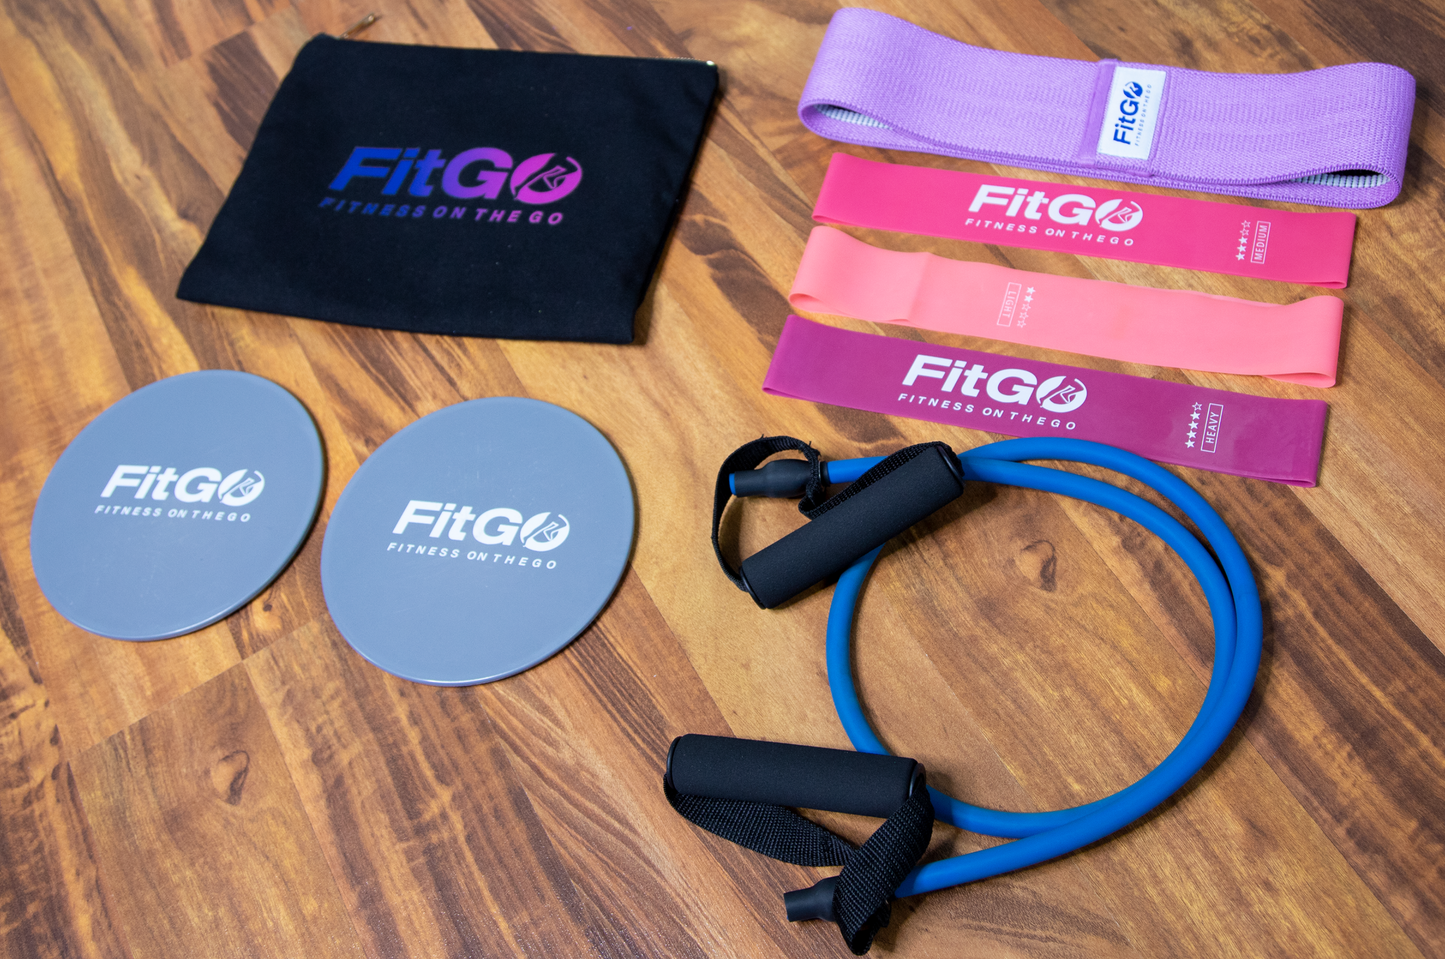 FitGO Fitness Bag